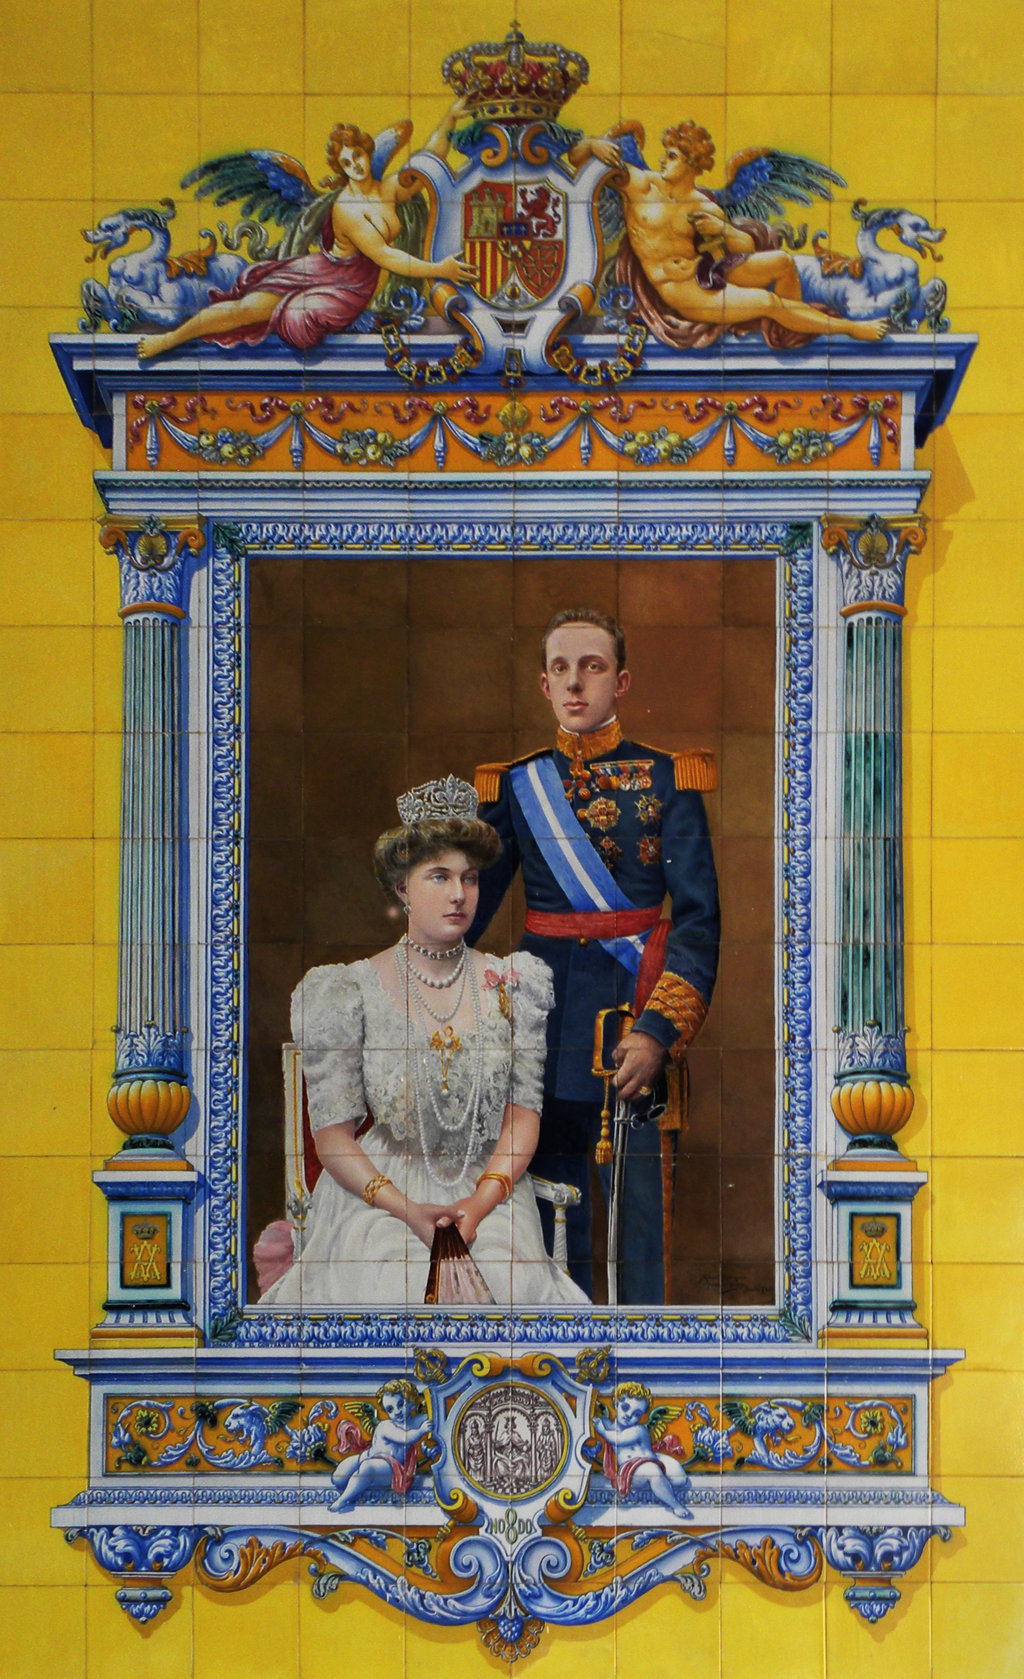 01070. Retrato de los Reyes de España, Alfonso XIII y Victoria Eugenia de Battenberg. Sevilla.